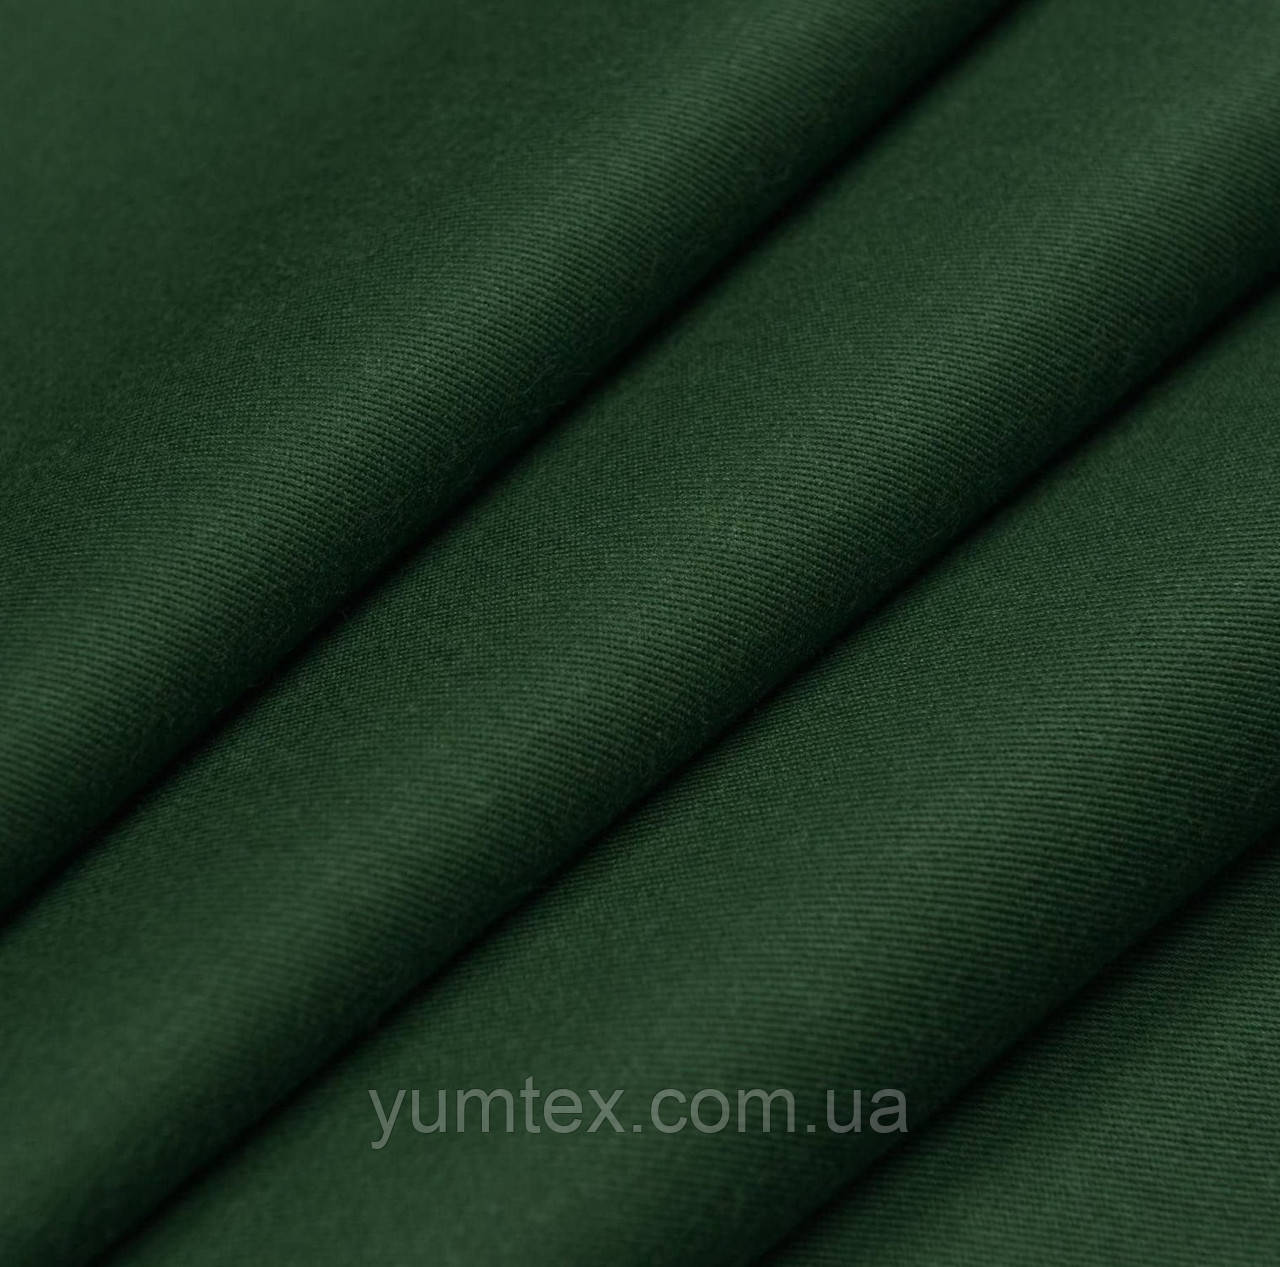 Тканина саржа бавовняна для сумок, чохлів, спецодягни, рюкзаків зелена